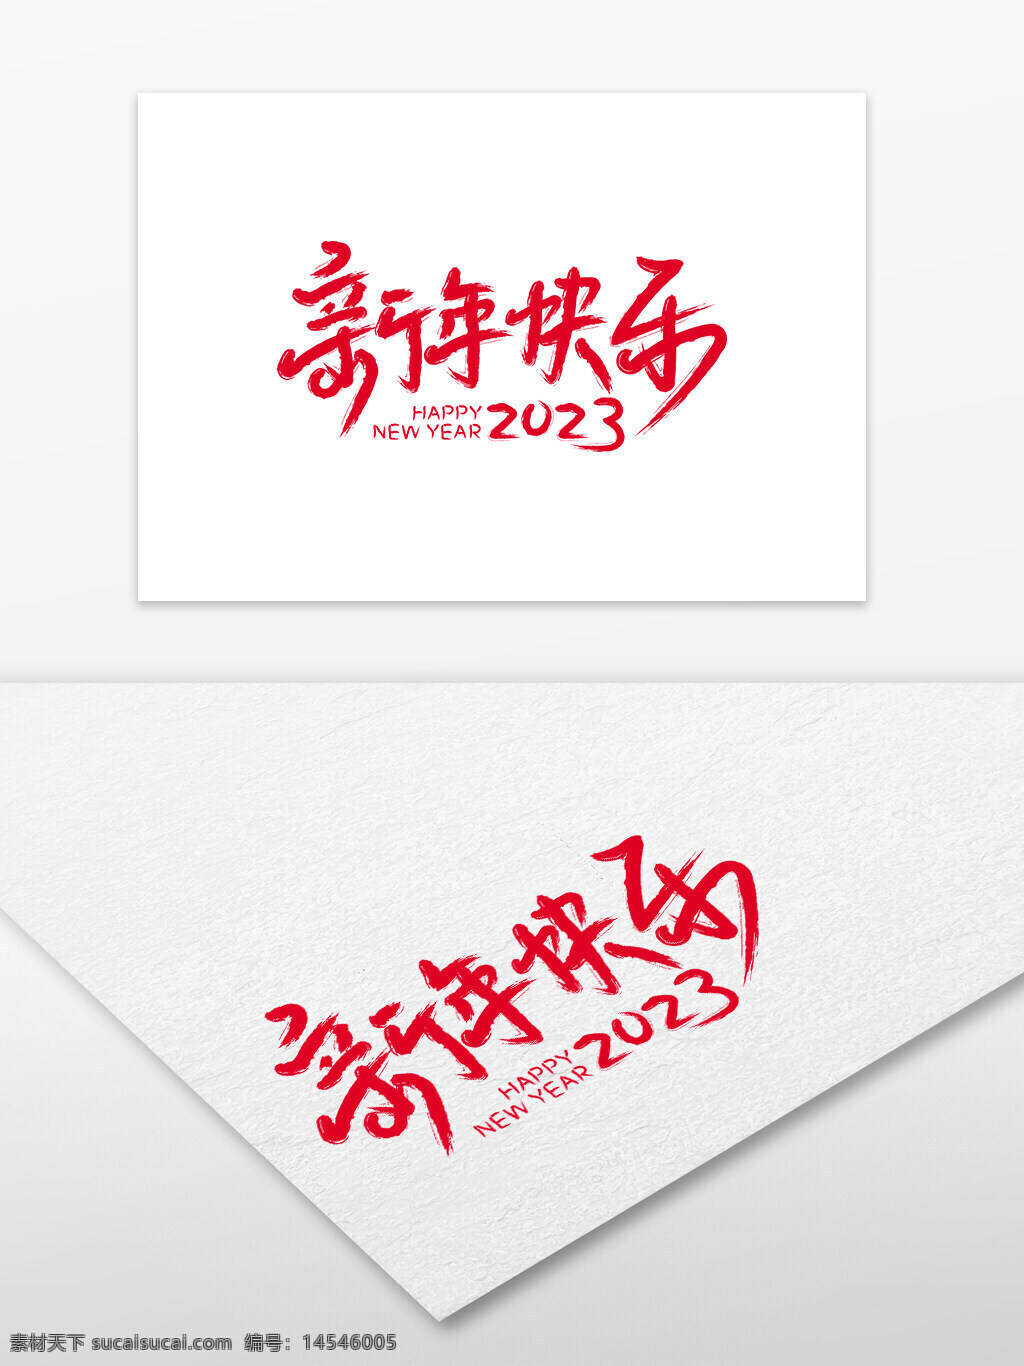 新年快乐2023 新年快乐 2023 新年字体 新年 毛笔字